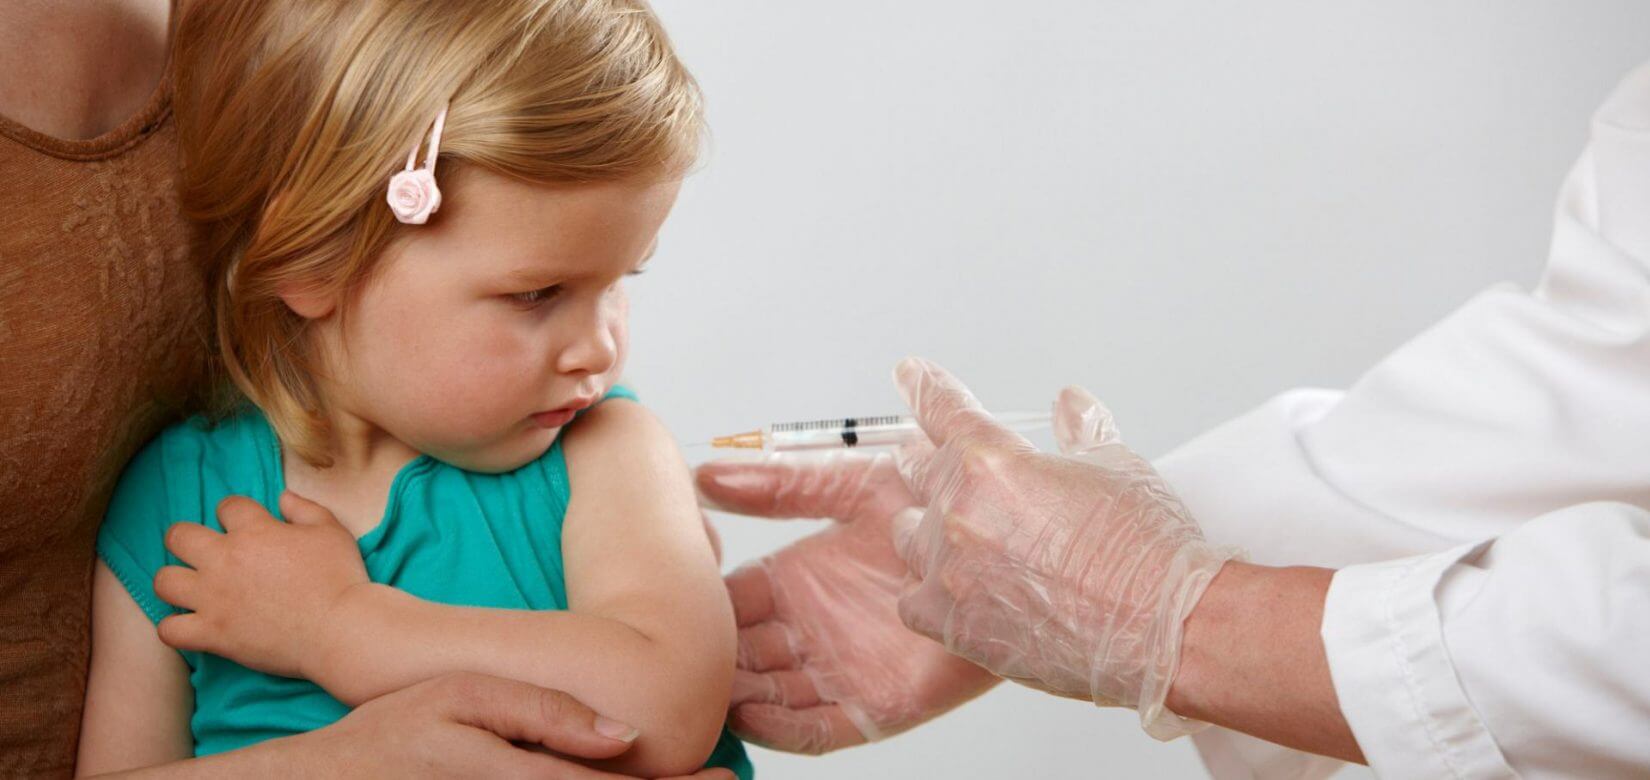 Μυοκαρδίτιδα: Πόσο πιθανή είναι η εμφάνισή της μετά τον εμβολιασμό σε παιδιά